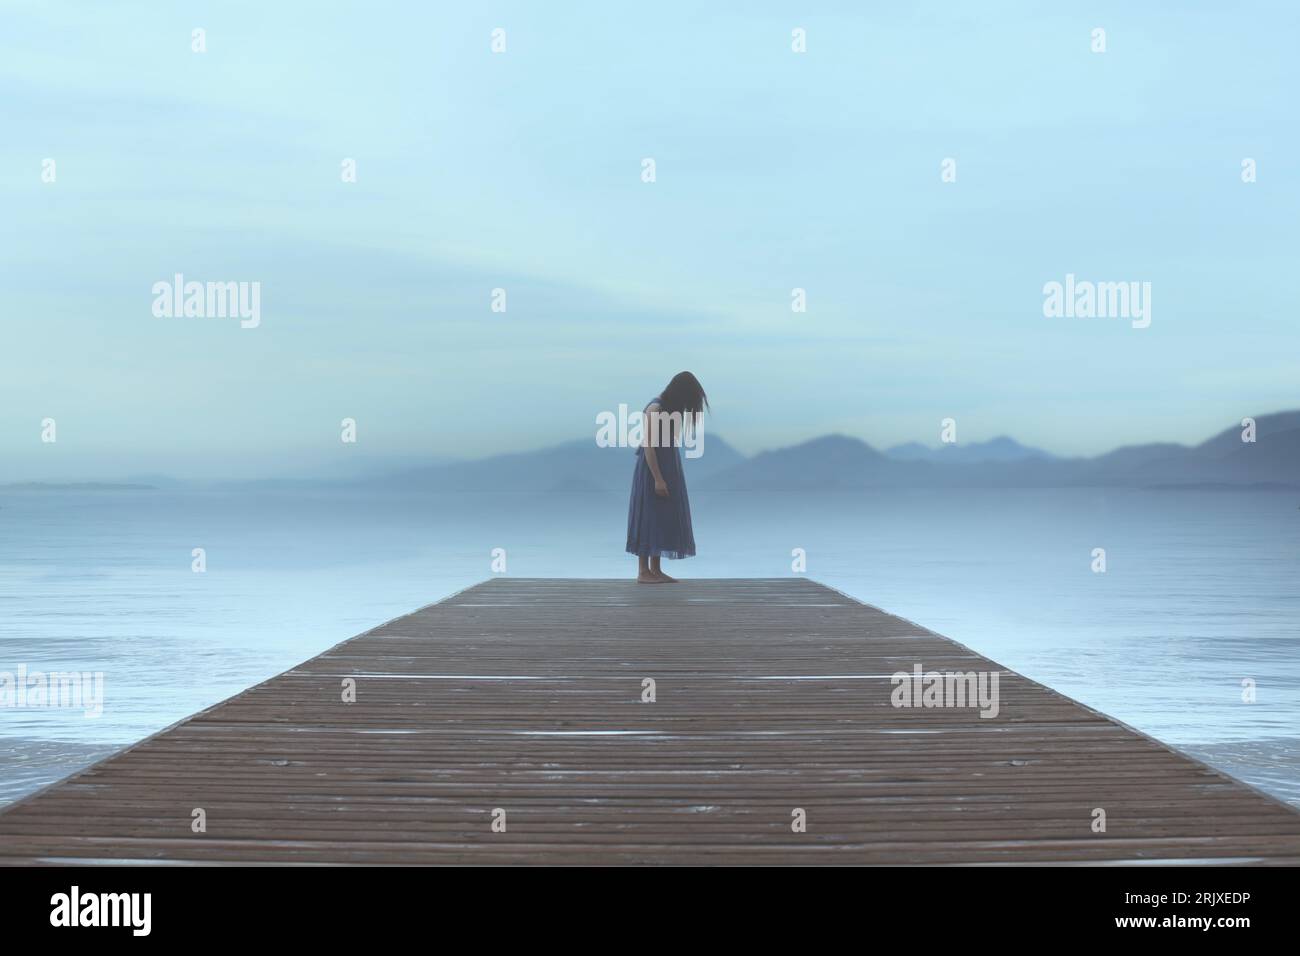 femme solitaire debout sur une jetée au bord de la mer est emporté par les émotions dans une atmosphère surréaliste bleue Banque D'Images